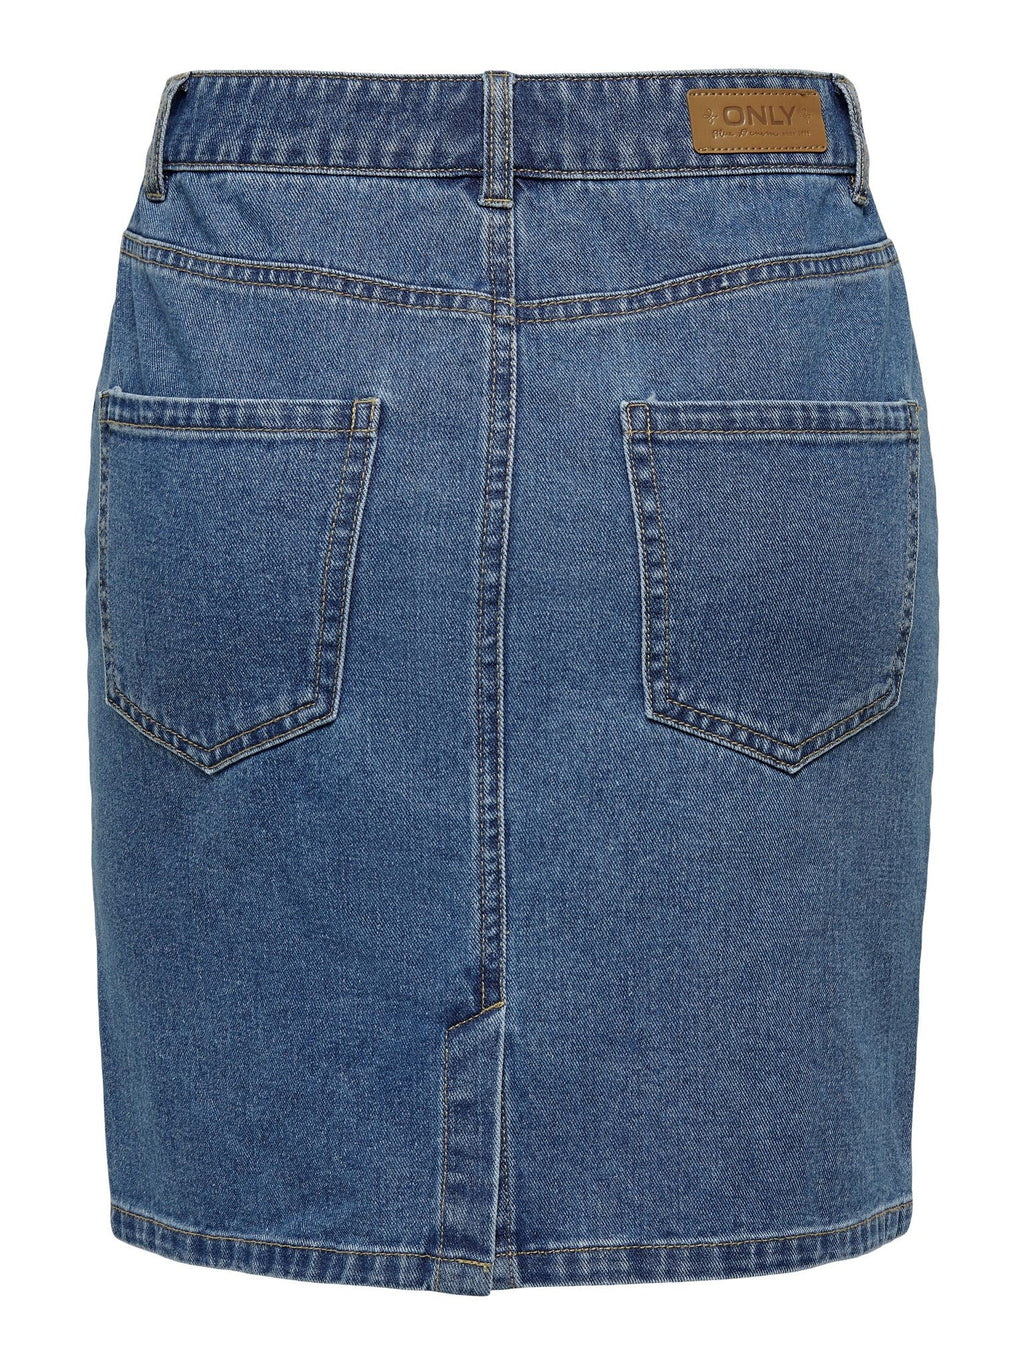 „Vega“ aukšto juosmens sijonas - vidutiniškai mėlynas džinsinis audinys